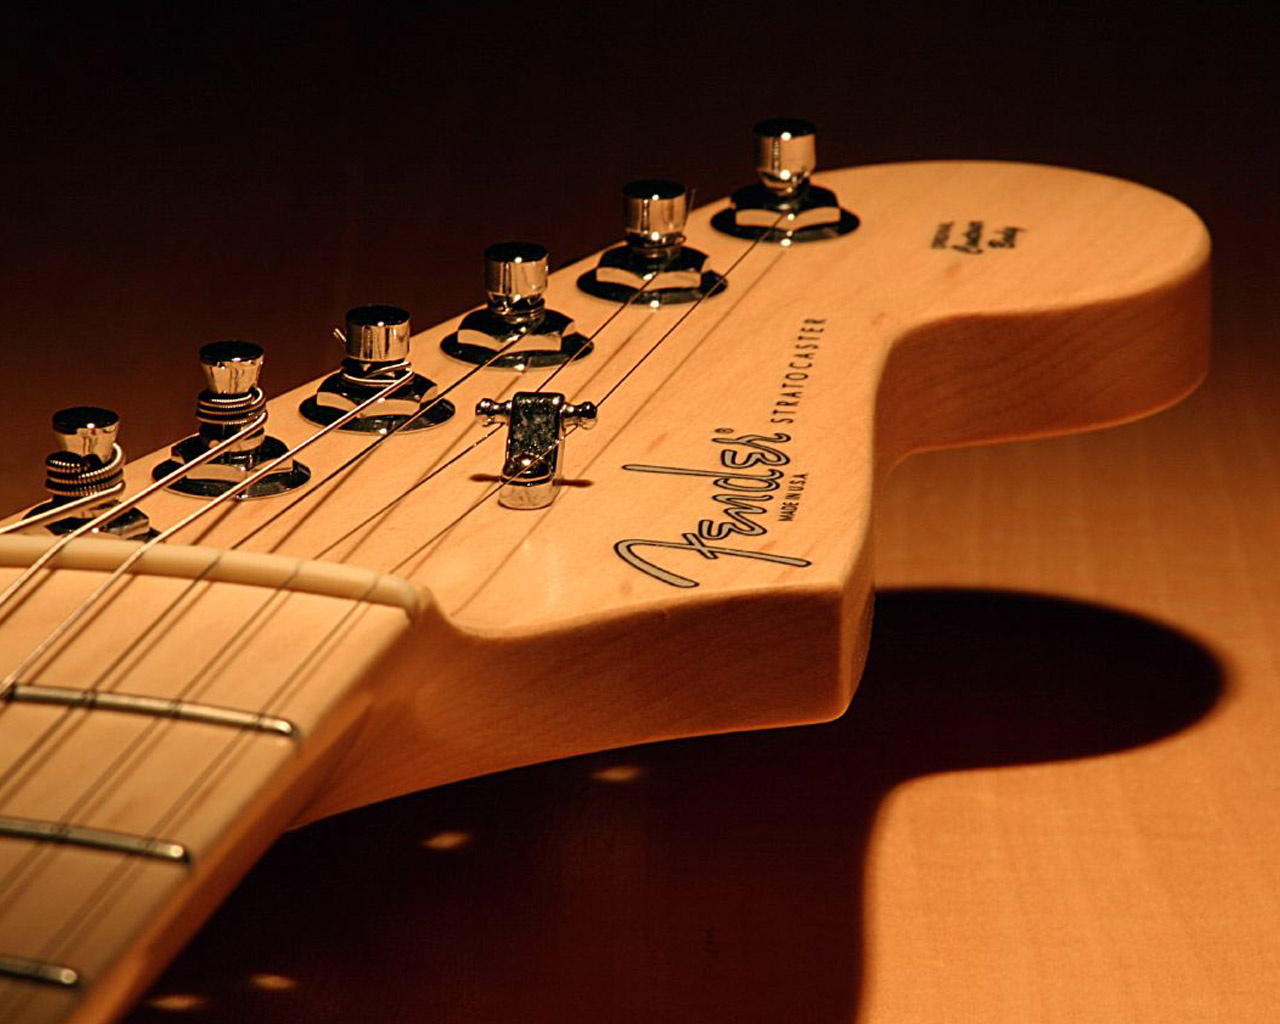 Fender Guitar Wallpaper For Desktop Image Amp Pictures Becuo